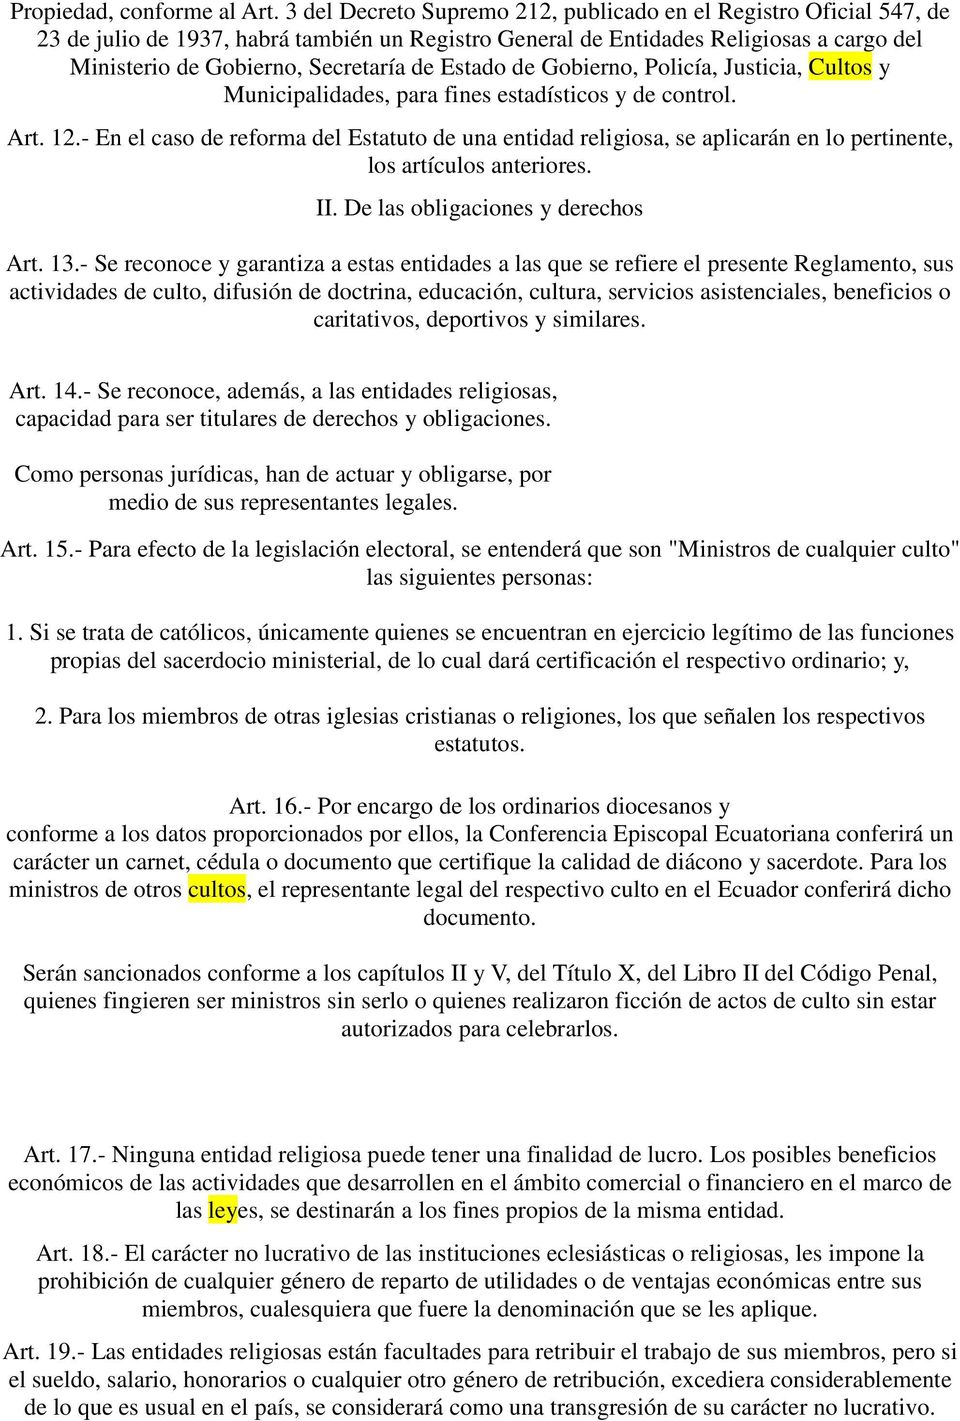 Estado de Gobierno, Policía, Justicia, Cultos y Municipalidades, para fines estadísticos y de control. Art. 12.